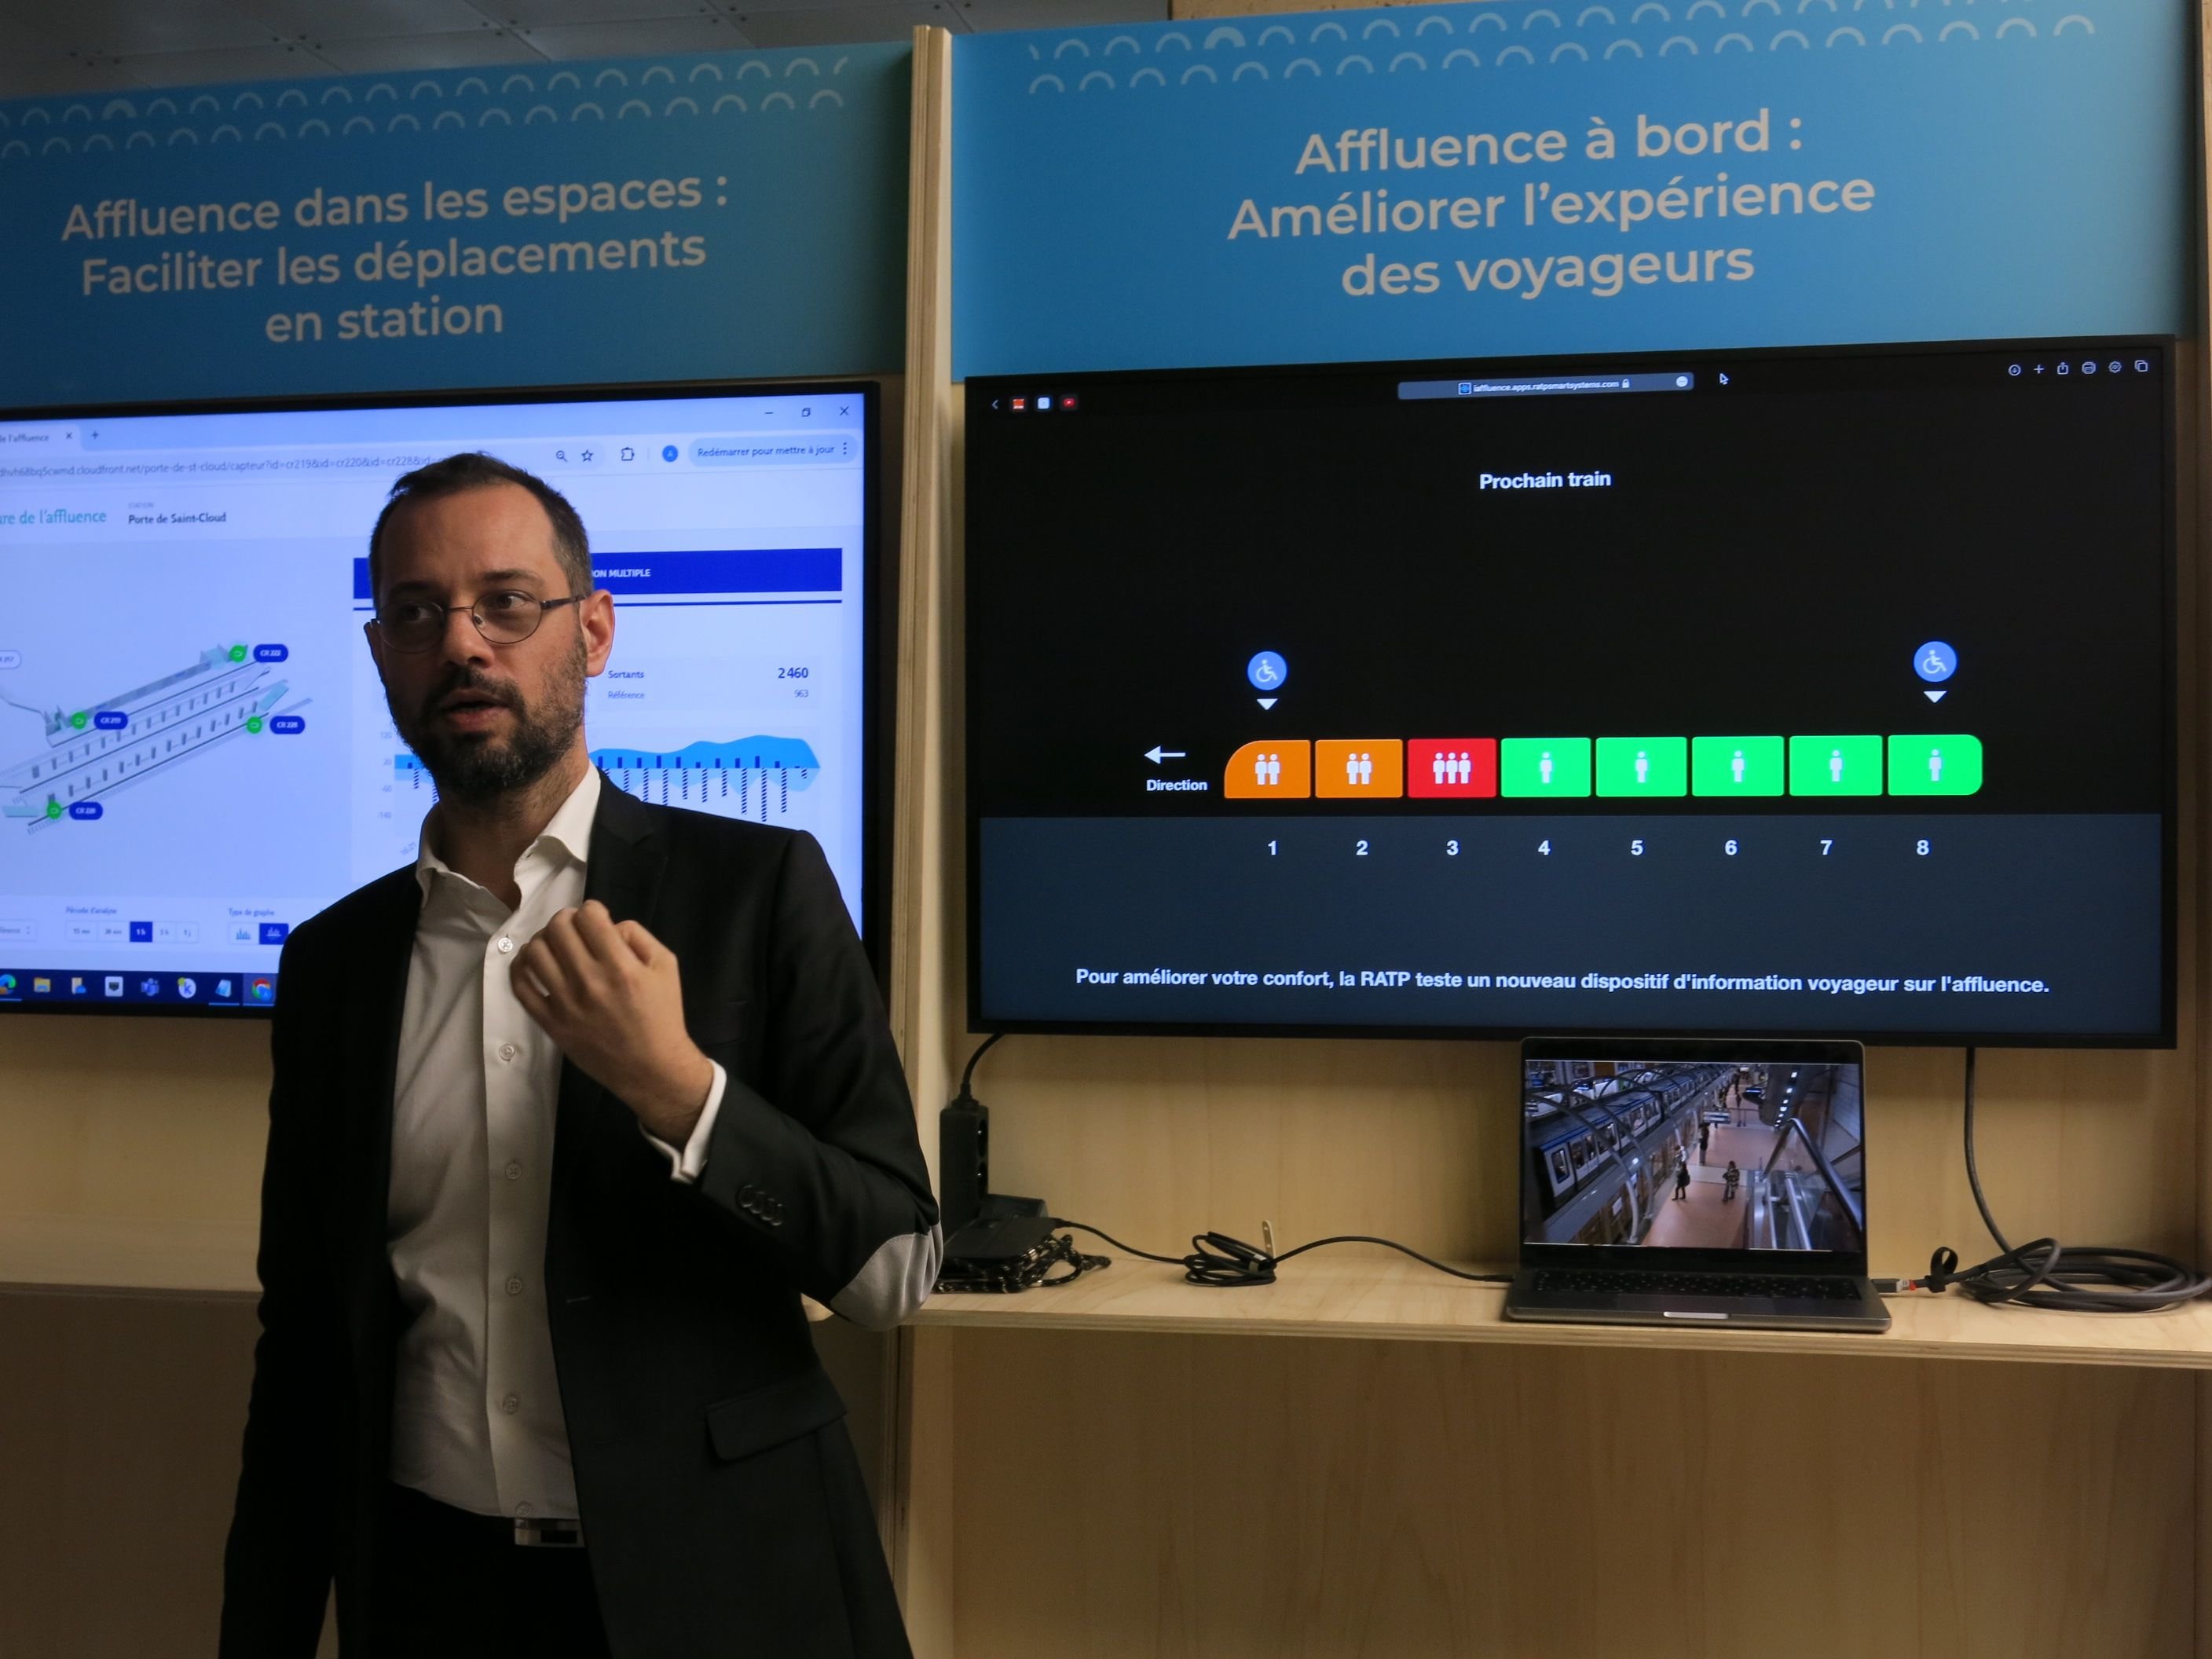 Gilles Tauzin, directeur de l'innovation du groupe RATP, a présenté le nouveau dispositif de mesure de l'affluence à bord : les voitures indiquées en vert sur l'écran sont les moins chargées. LP/Benoît Hasse